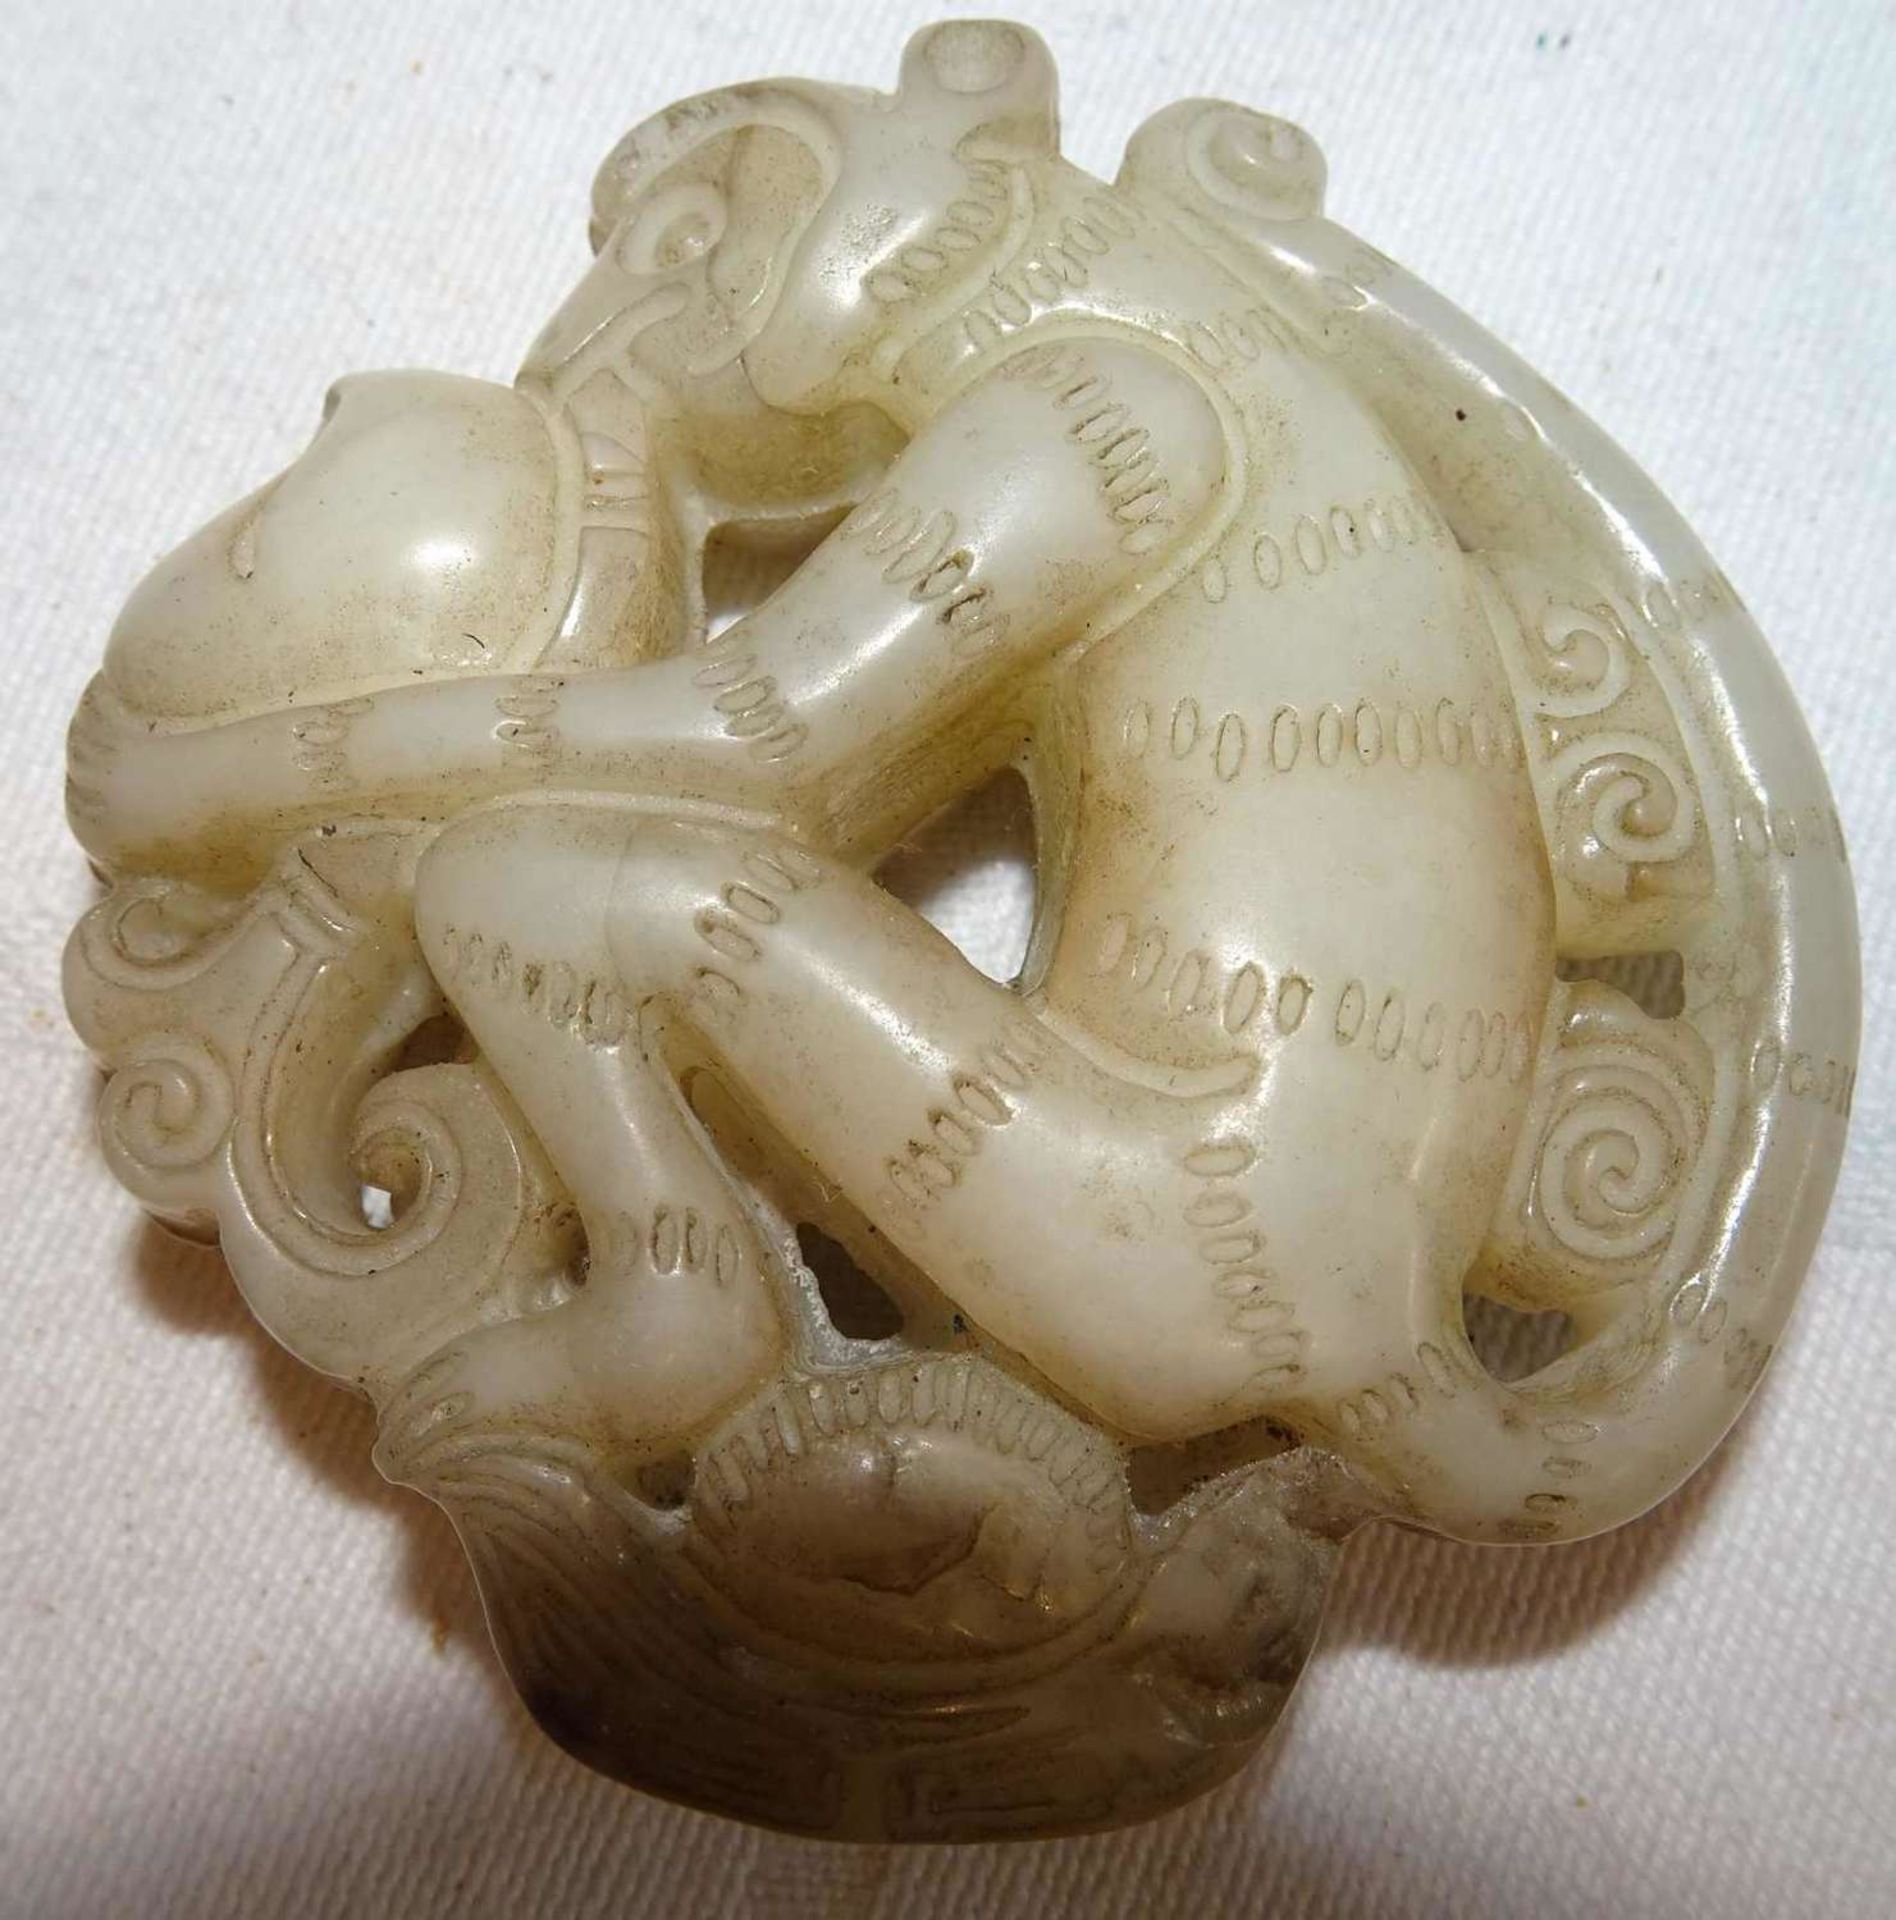 Altes Jade Amulett "Affe". Sehr altes Stück aus einer Sammlung. Höhe ca. 6 cm, Breite ca. 5,6 cmO - Bild 2 aus 3